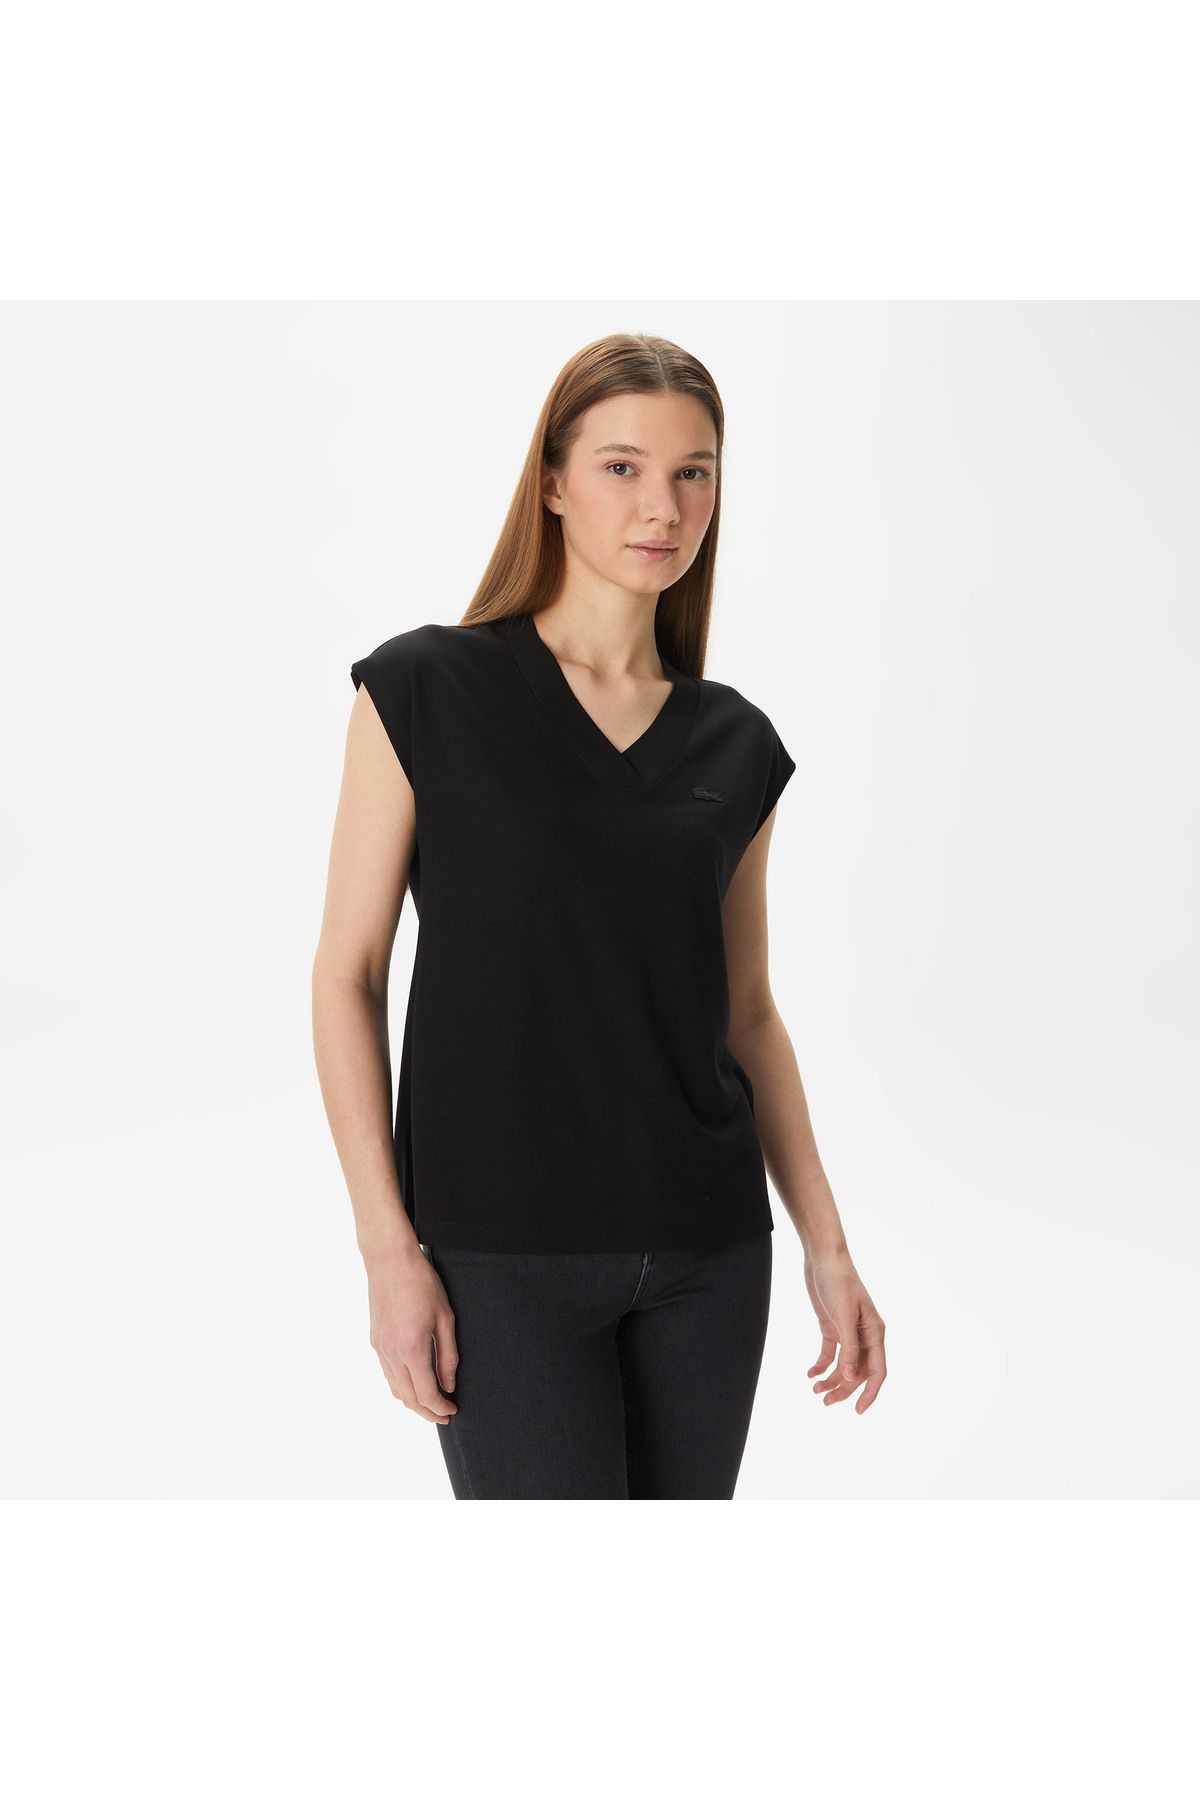 Lacoste Kadın Slim Fit V Yaka Siyah T-shirt